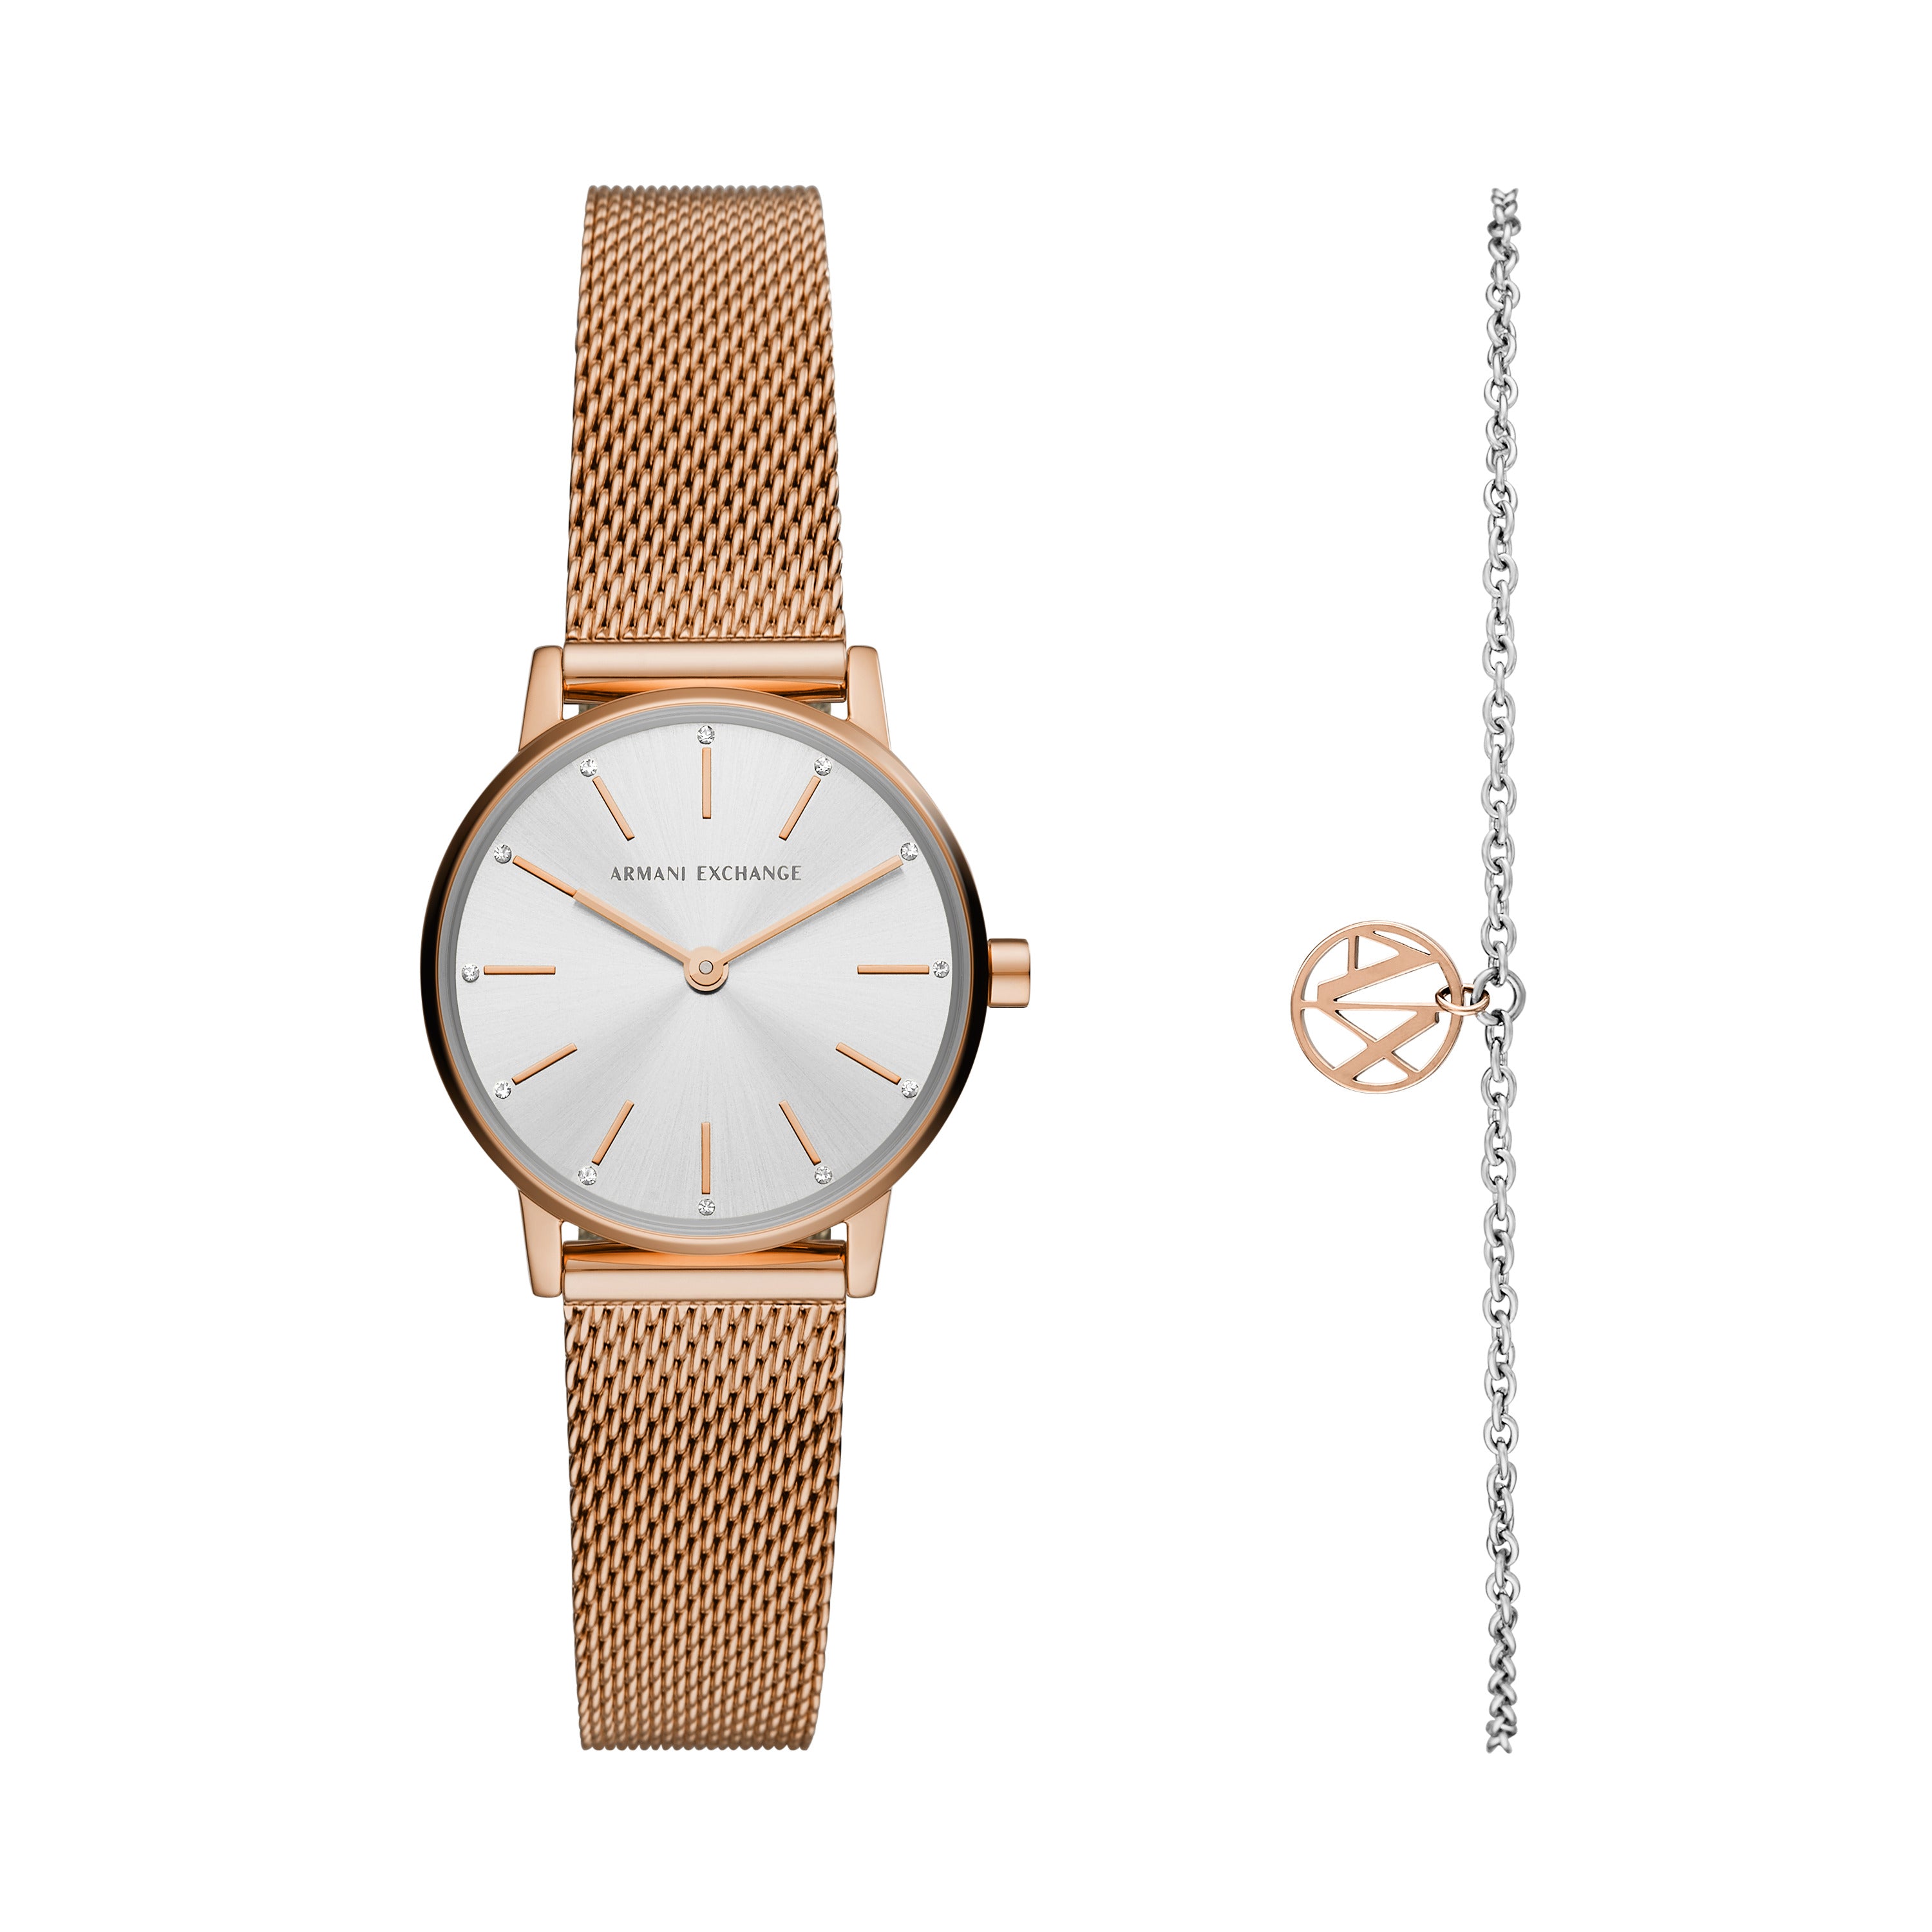 ARMANI EXCHANGE 腕時計 AX2086 - 腕時計(アナログ)